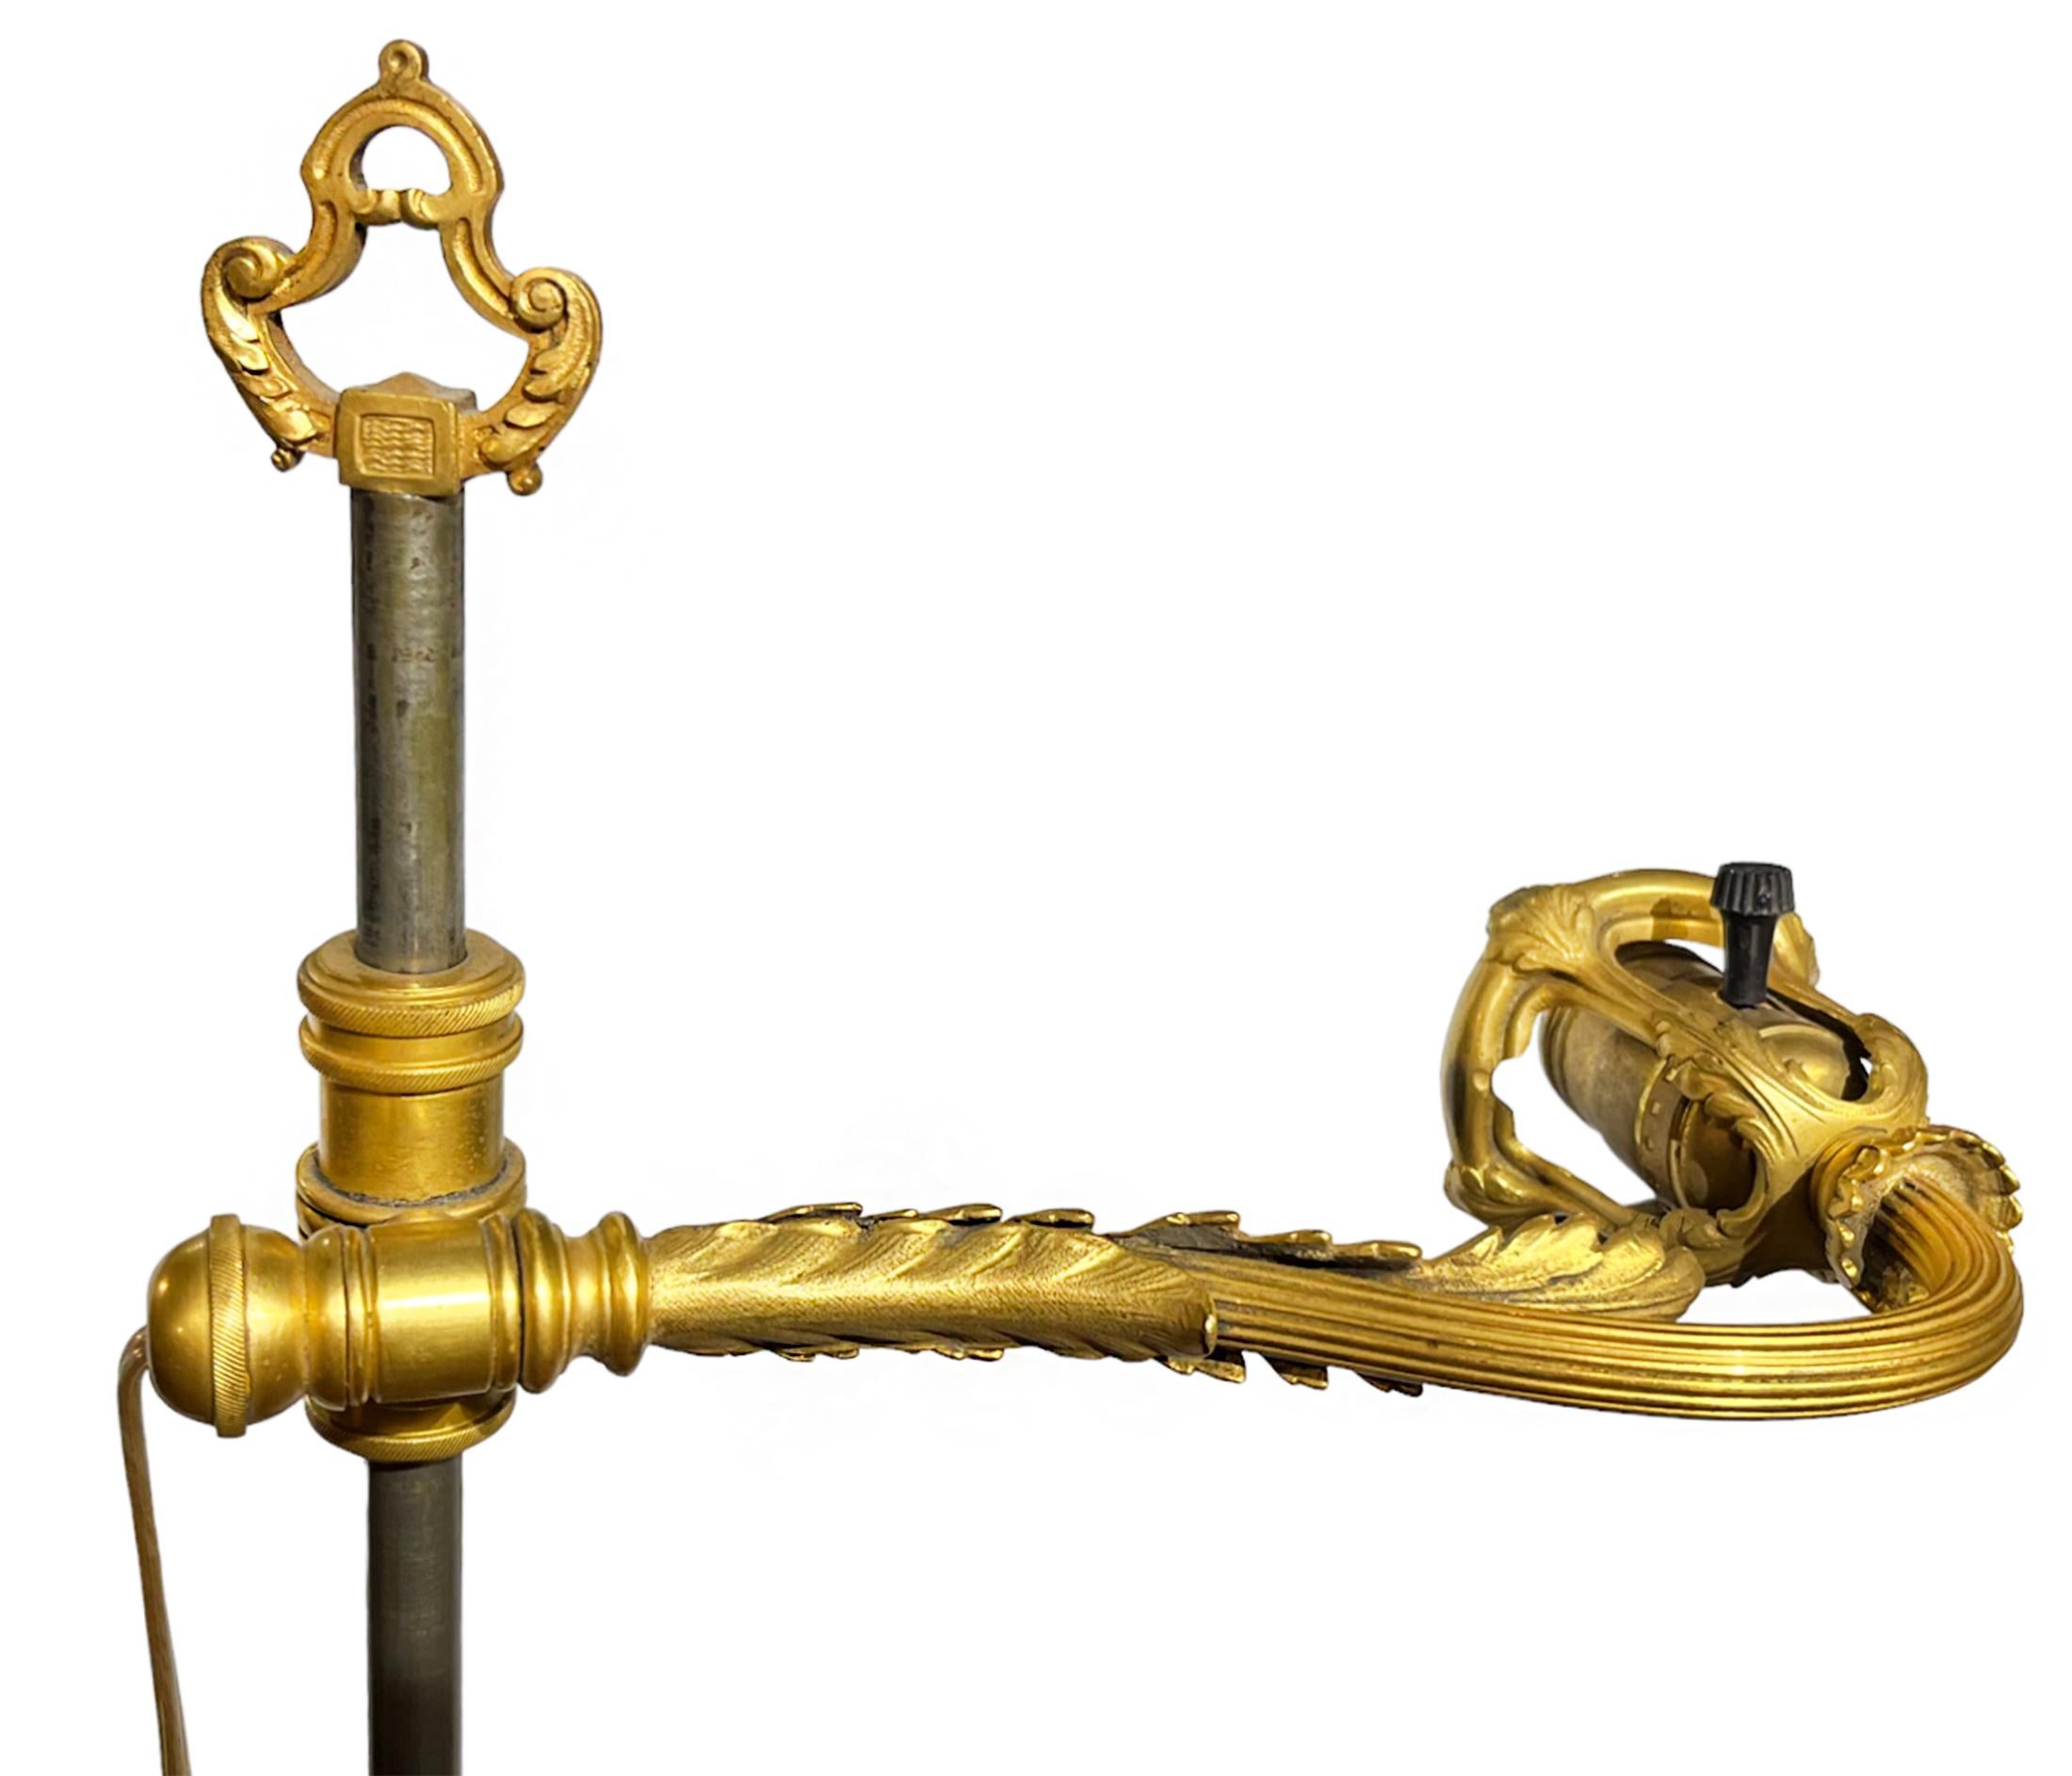 Ce fabuleux lampadaire ancien d'Edward F. Caldwell présente un design épuré avec une solide base en bronze moulé doré avec un motif de feuillage et une lèvre en forme de couronne. Un mât cannelé part de la base et rejoint un joint ornementé qui